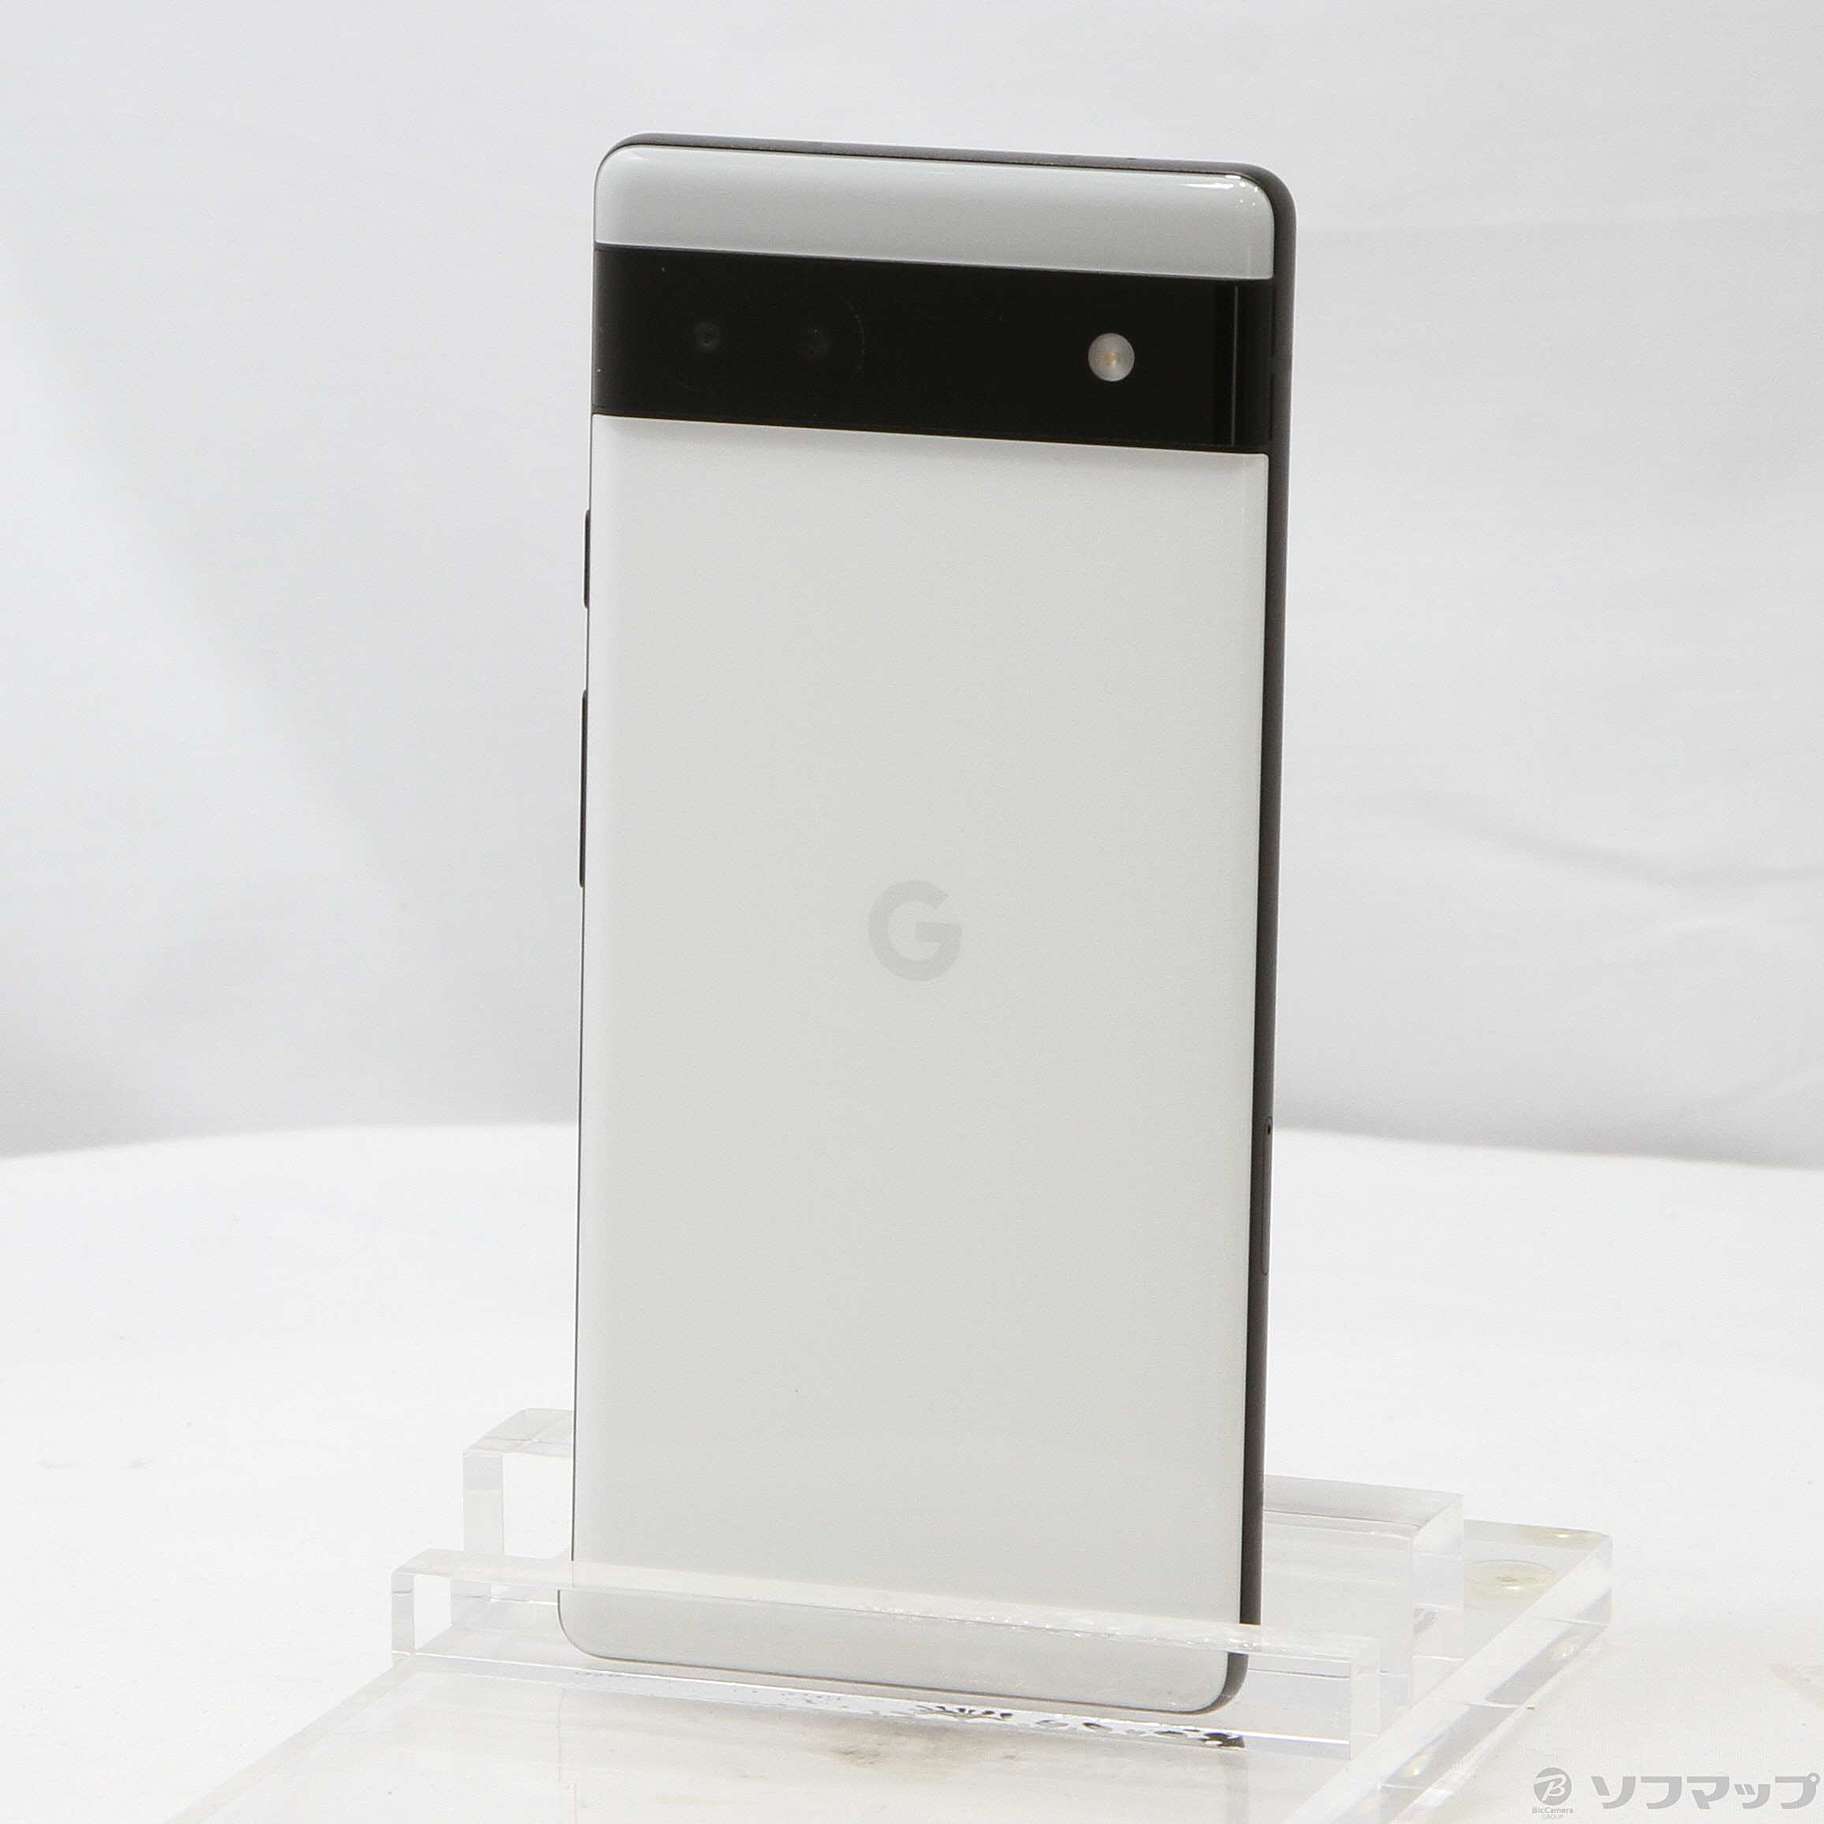 【新品】Google pixel　6a チョーク(ホワイト)ピクセル6a 本体